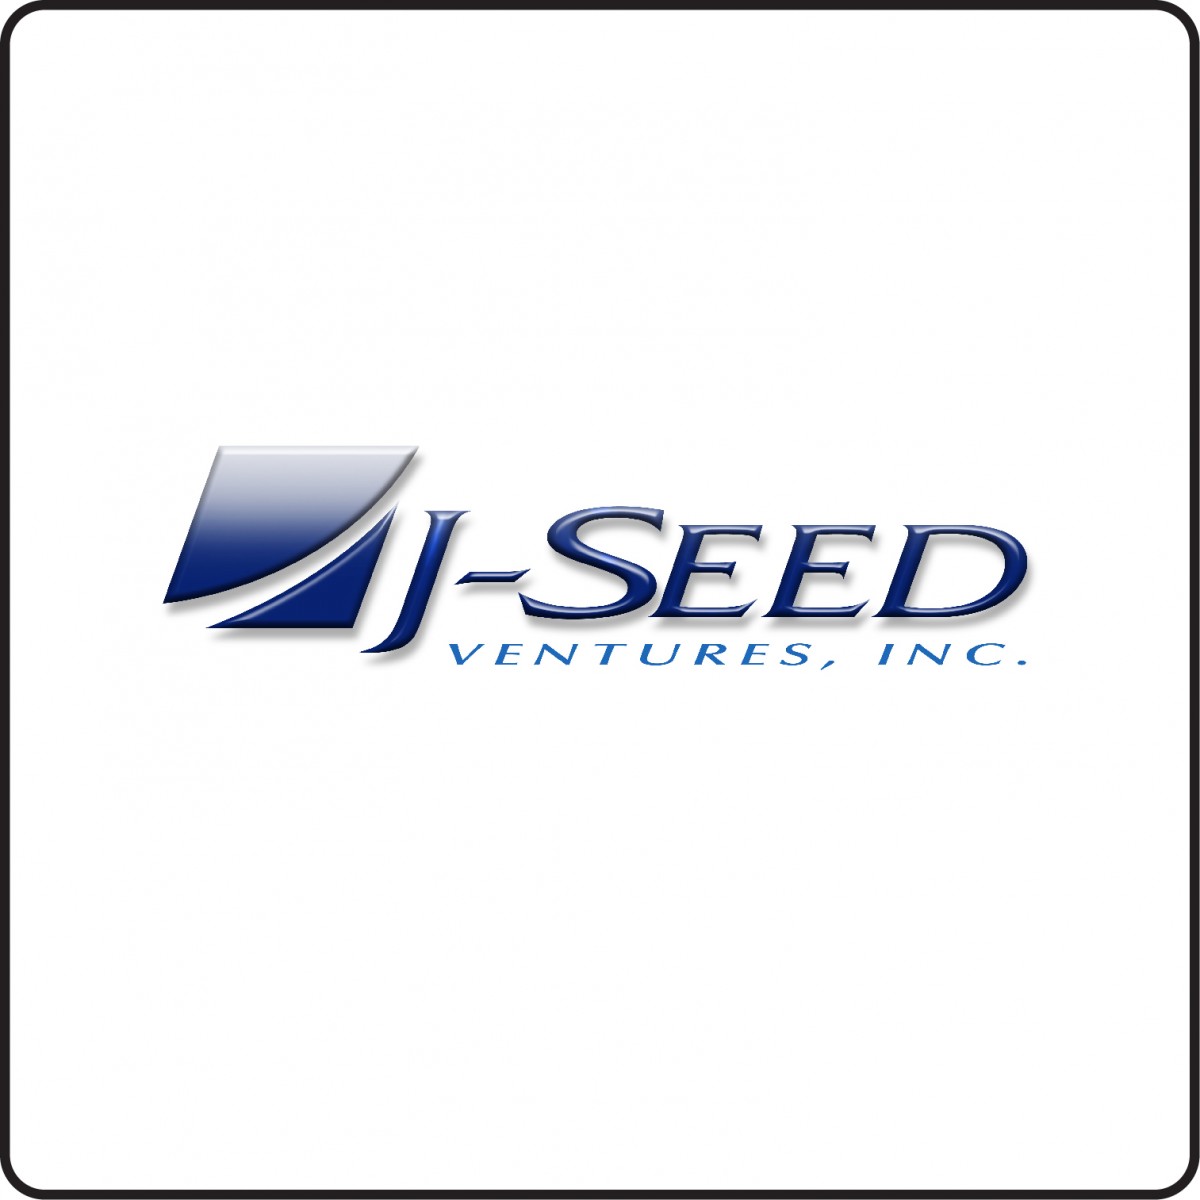 J-Seed Ventures, Inc.